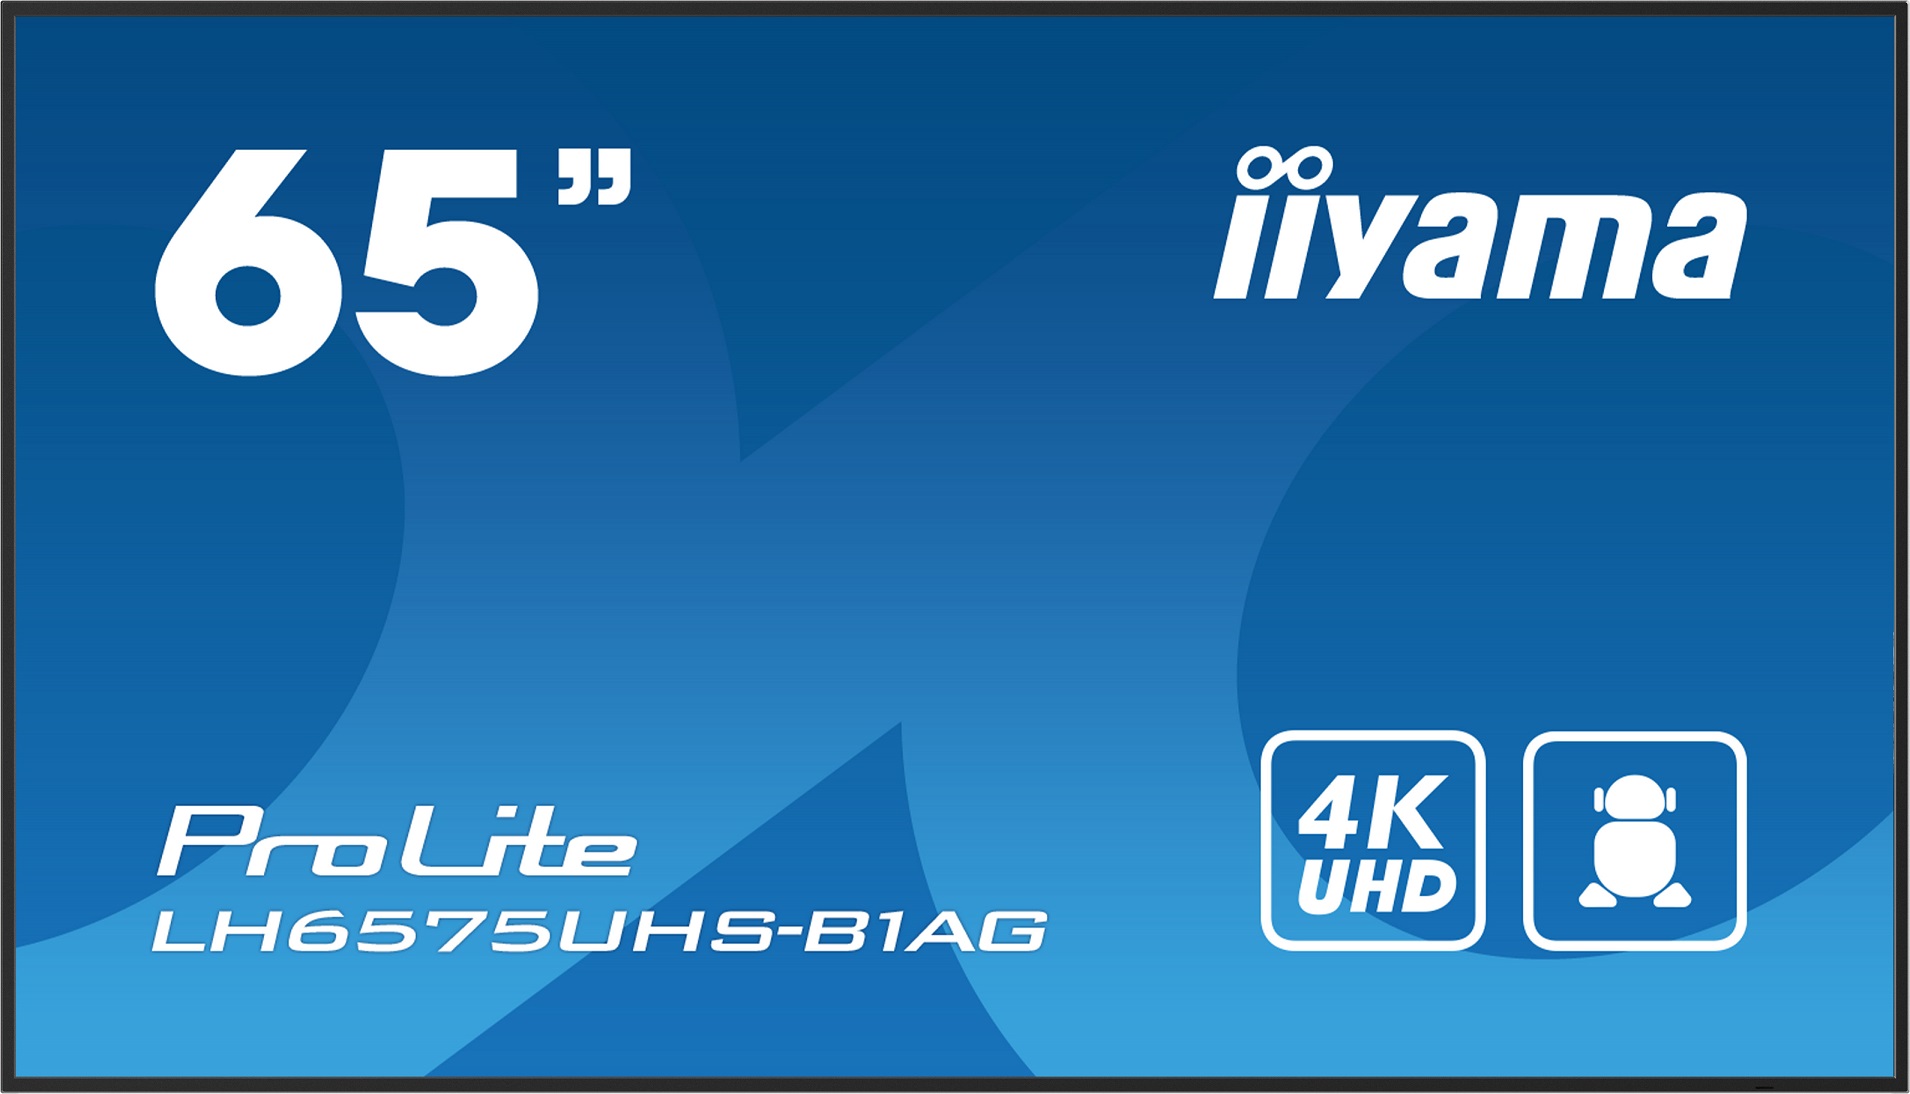 65" iiyama LH6575UHS-B1AG: IPS,4K UHD,Android,24/7